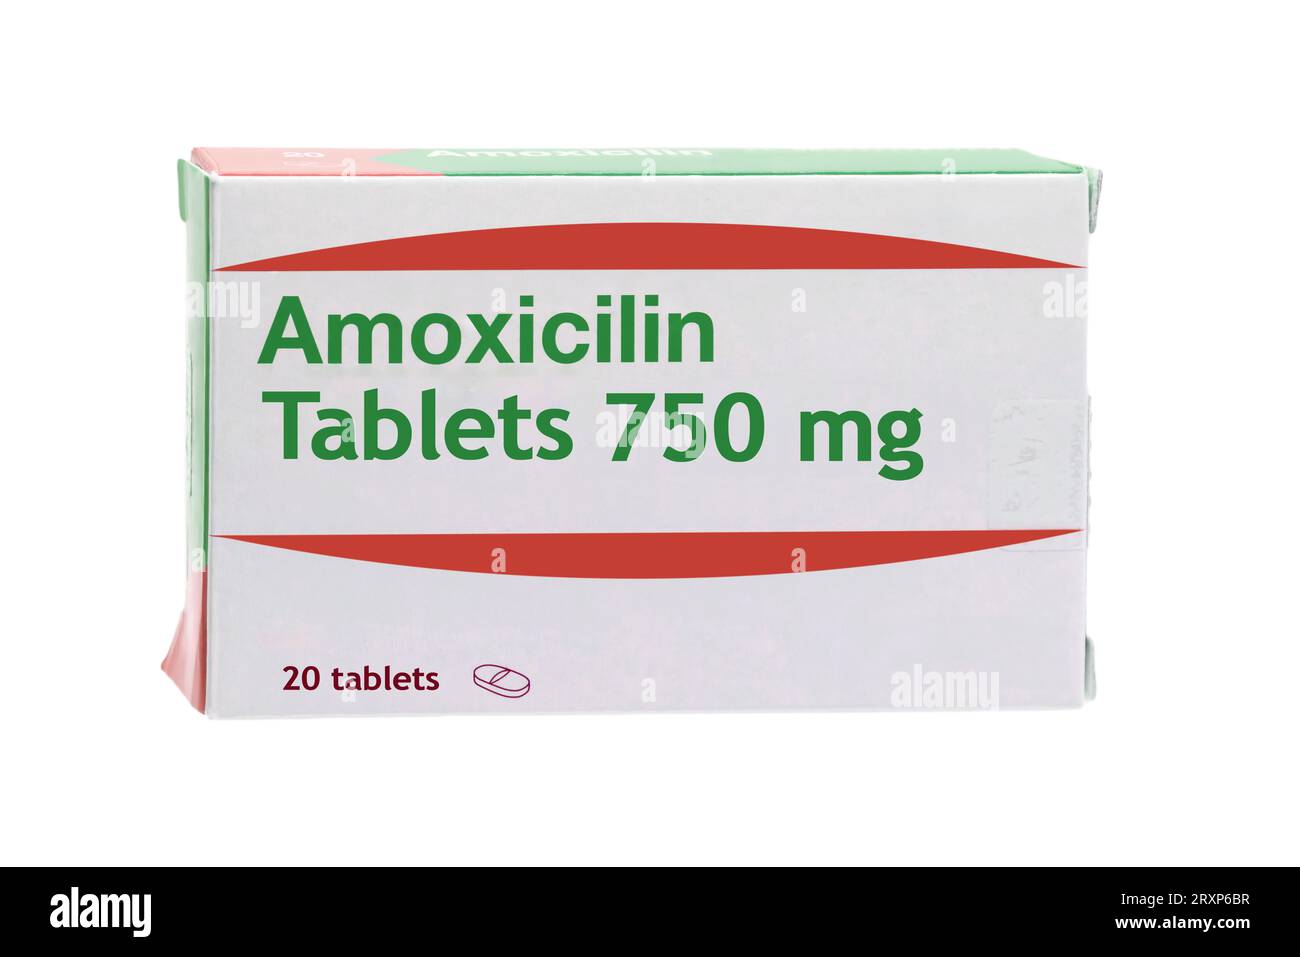 Scatola generica di amoxicillina 750 mg, usata per trattare alcune infezioni causate da batteri. L'amoxicillina è un antibiotico simile alla penicillina Foto Stock